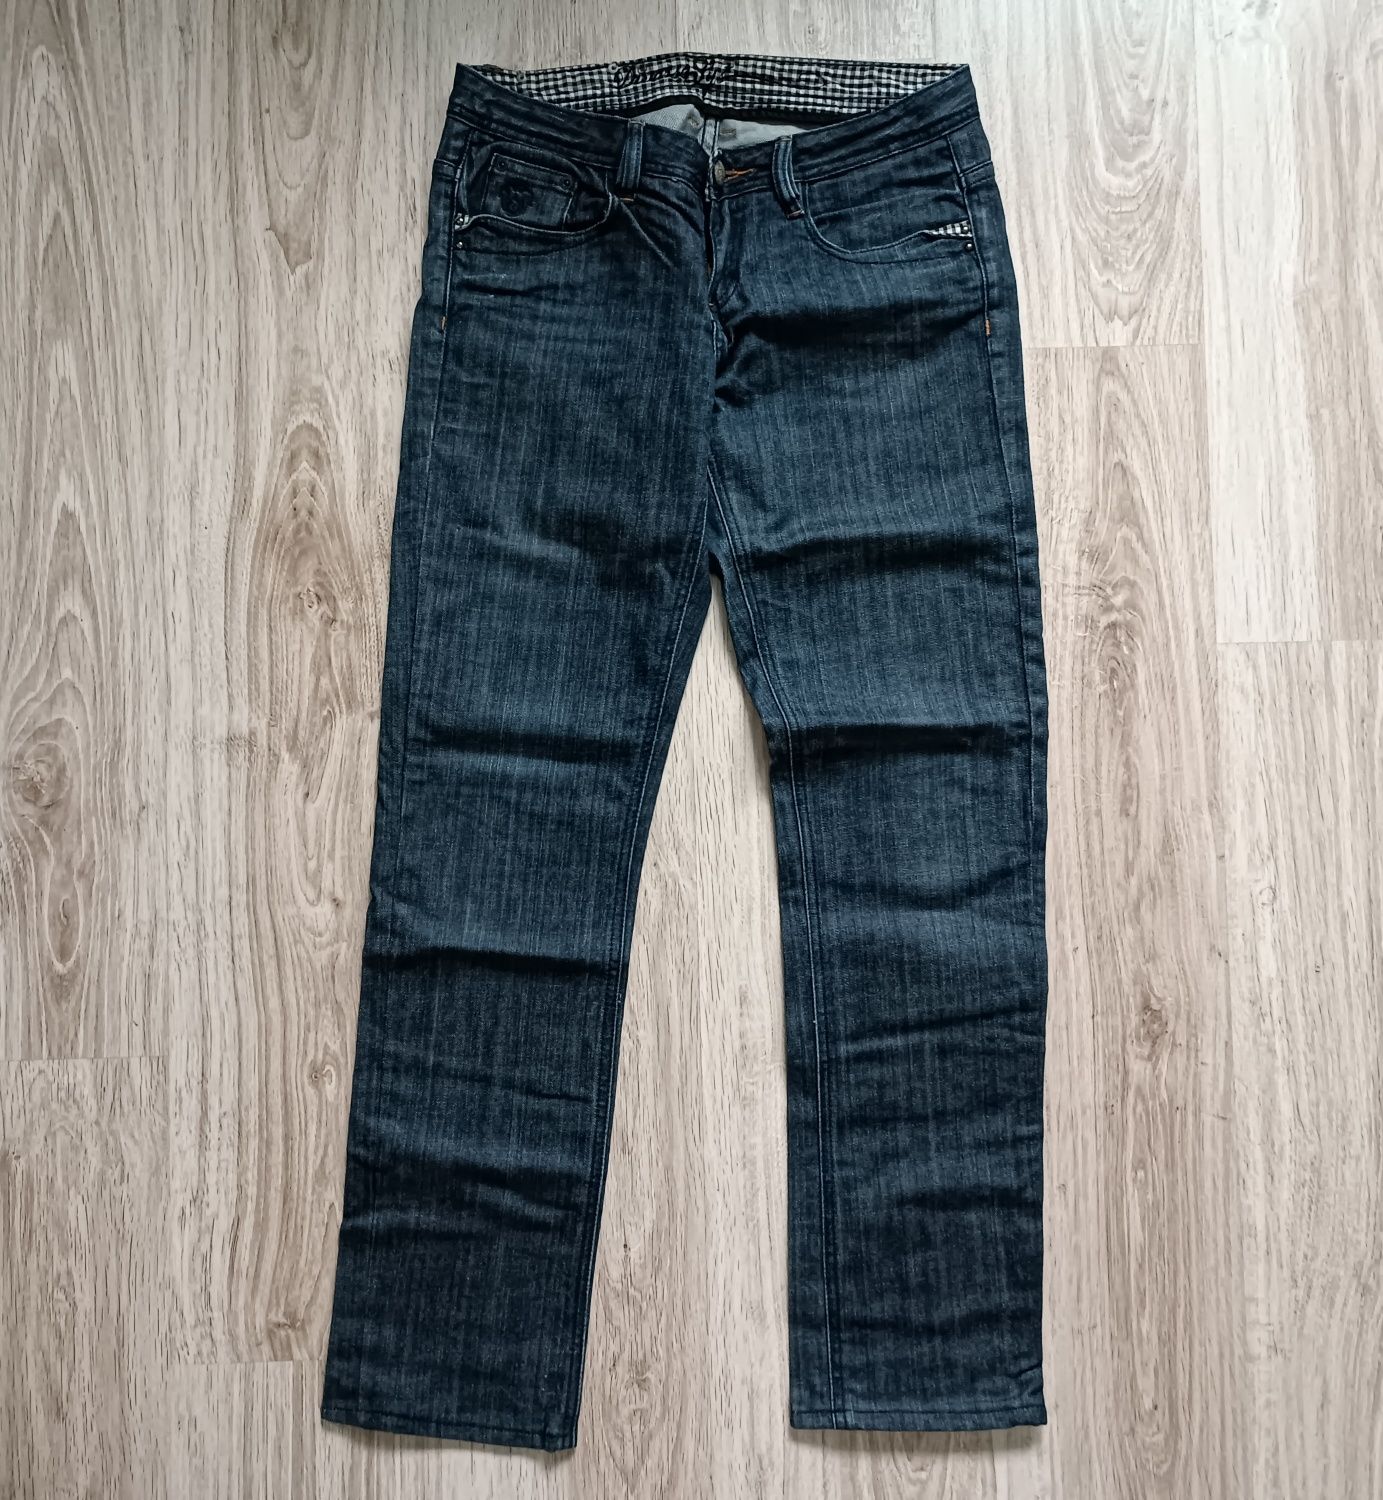 Spodnie jeansy damskie Diverse W 29 L 32